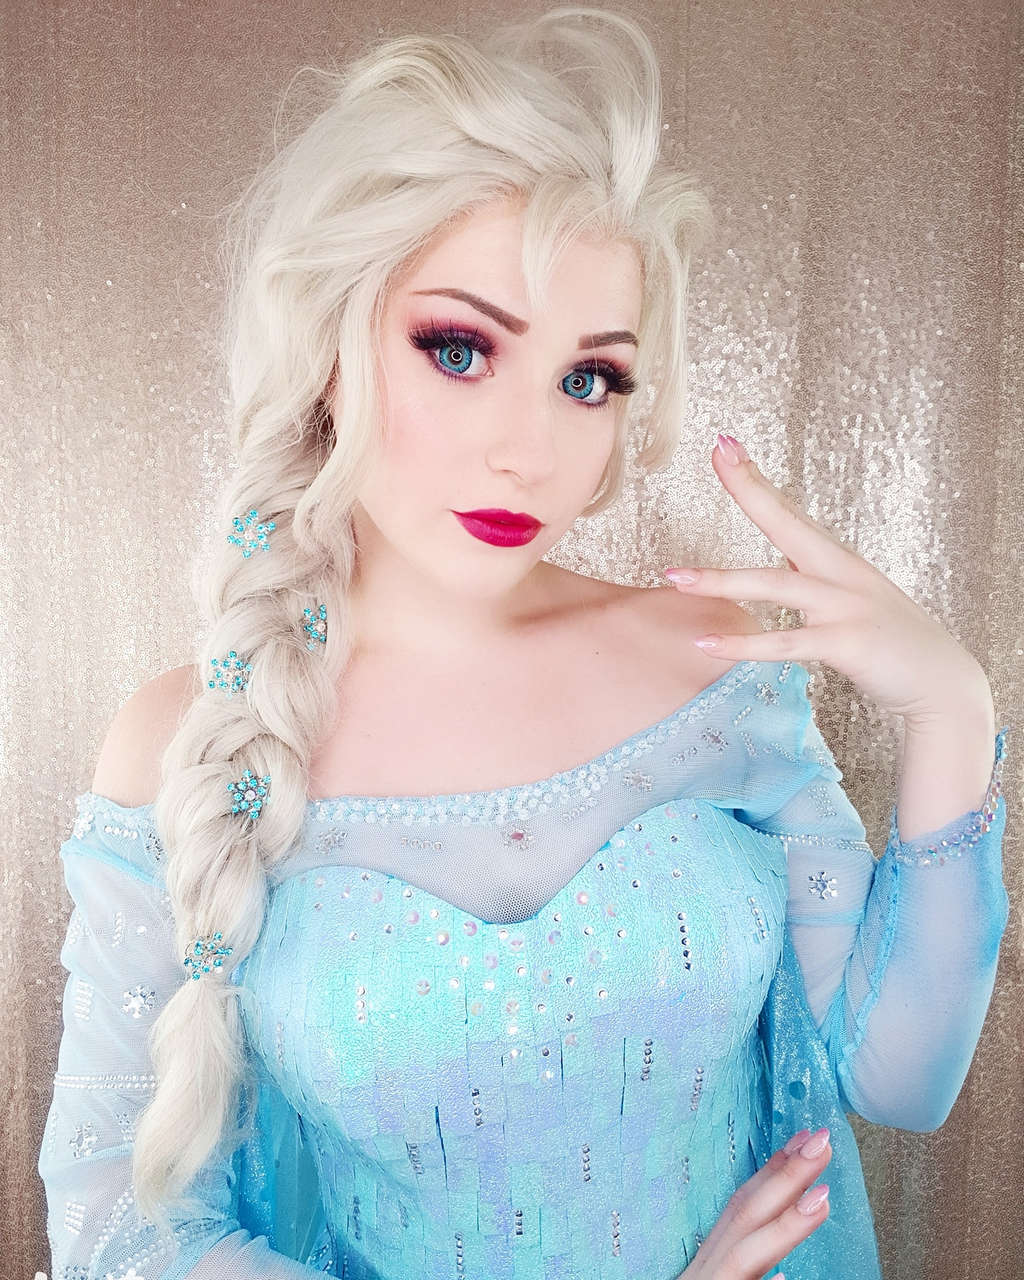 Laura Iurilli As Elsa Froze